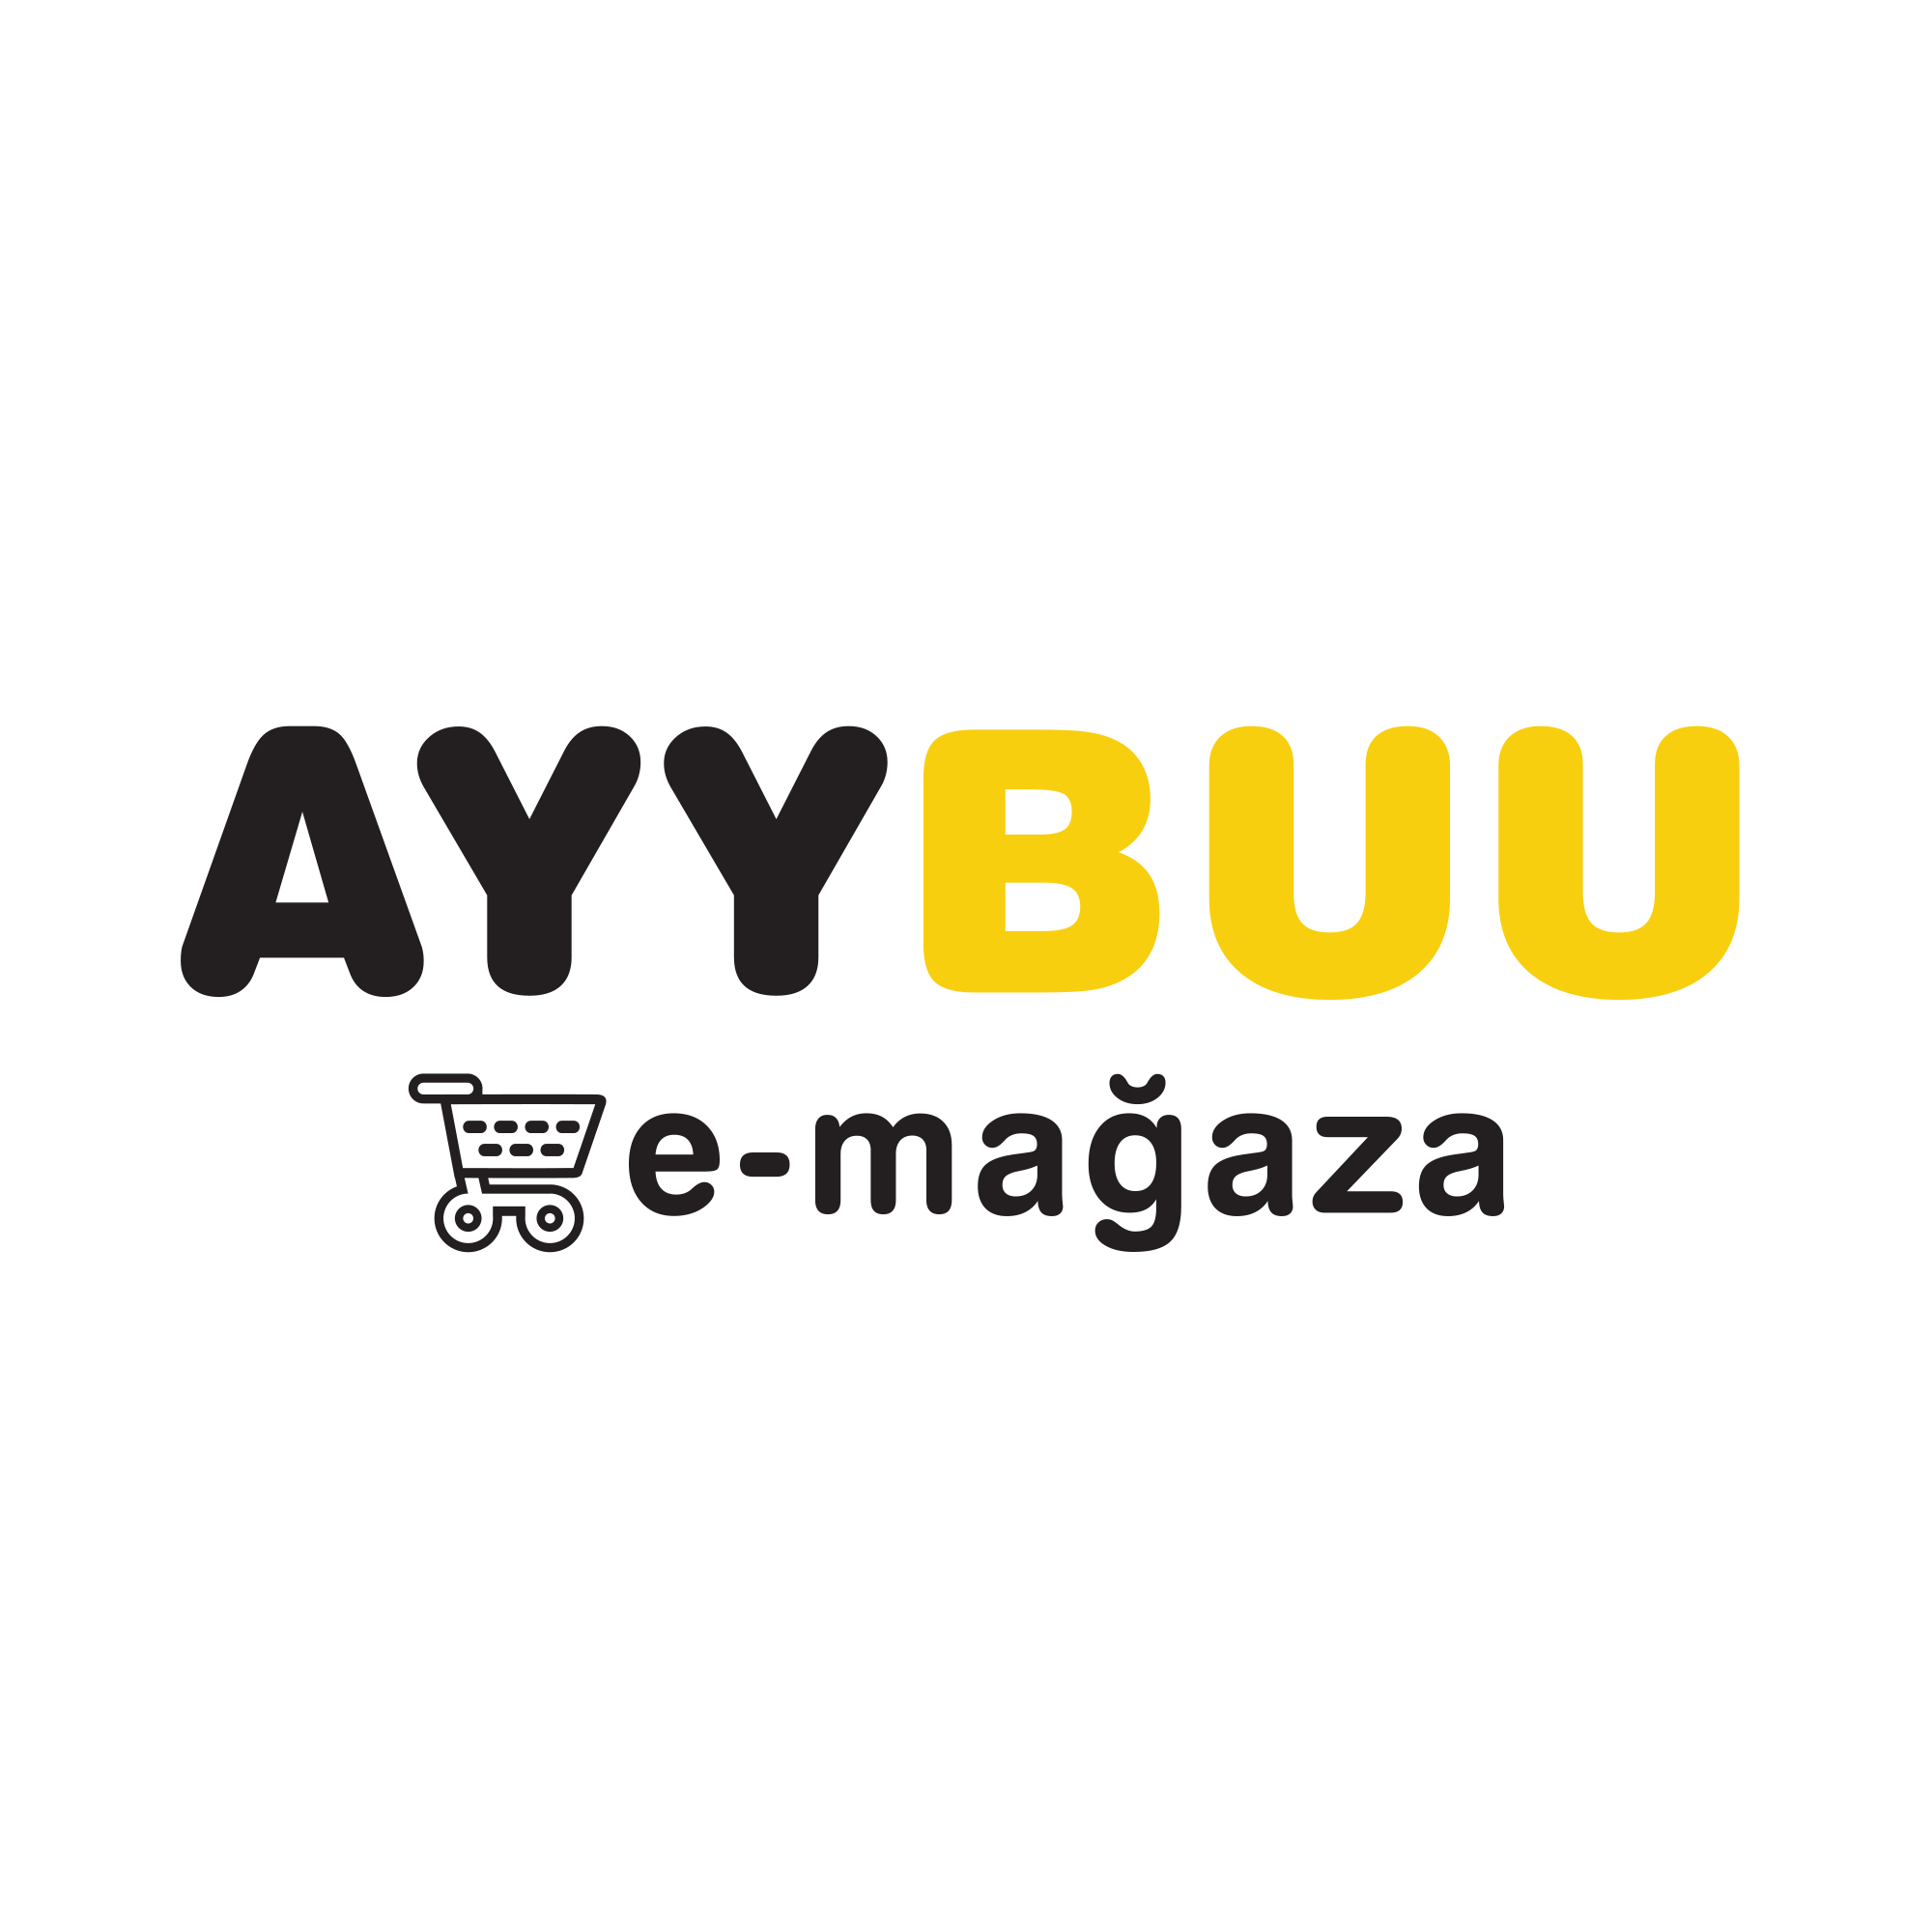 AYYBUU